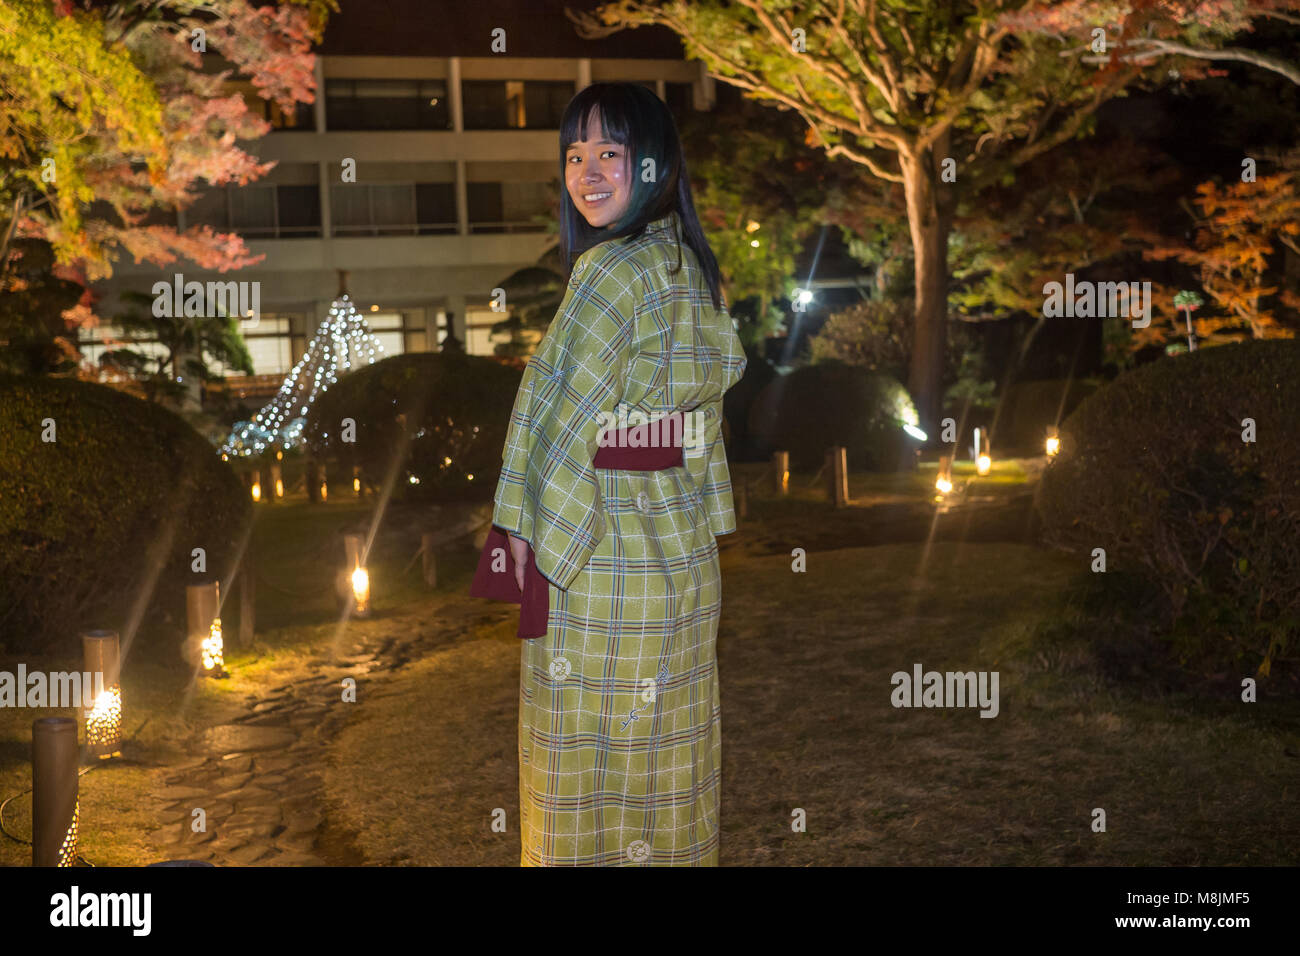 Belle jeune femme dans un yukata se promenant dans un jardin japonais Banque D'Images